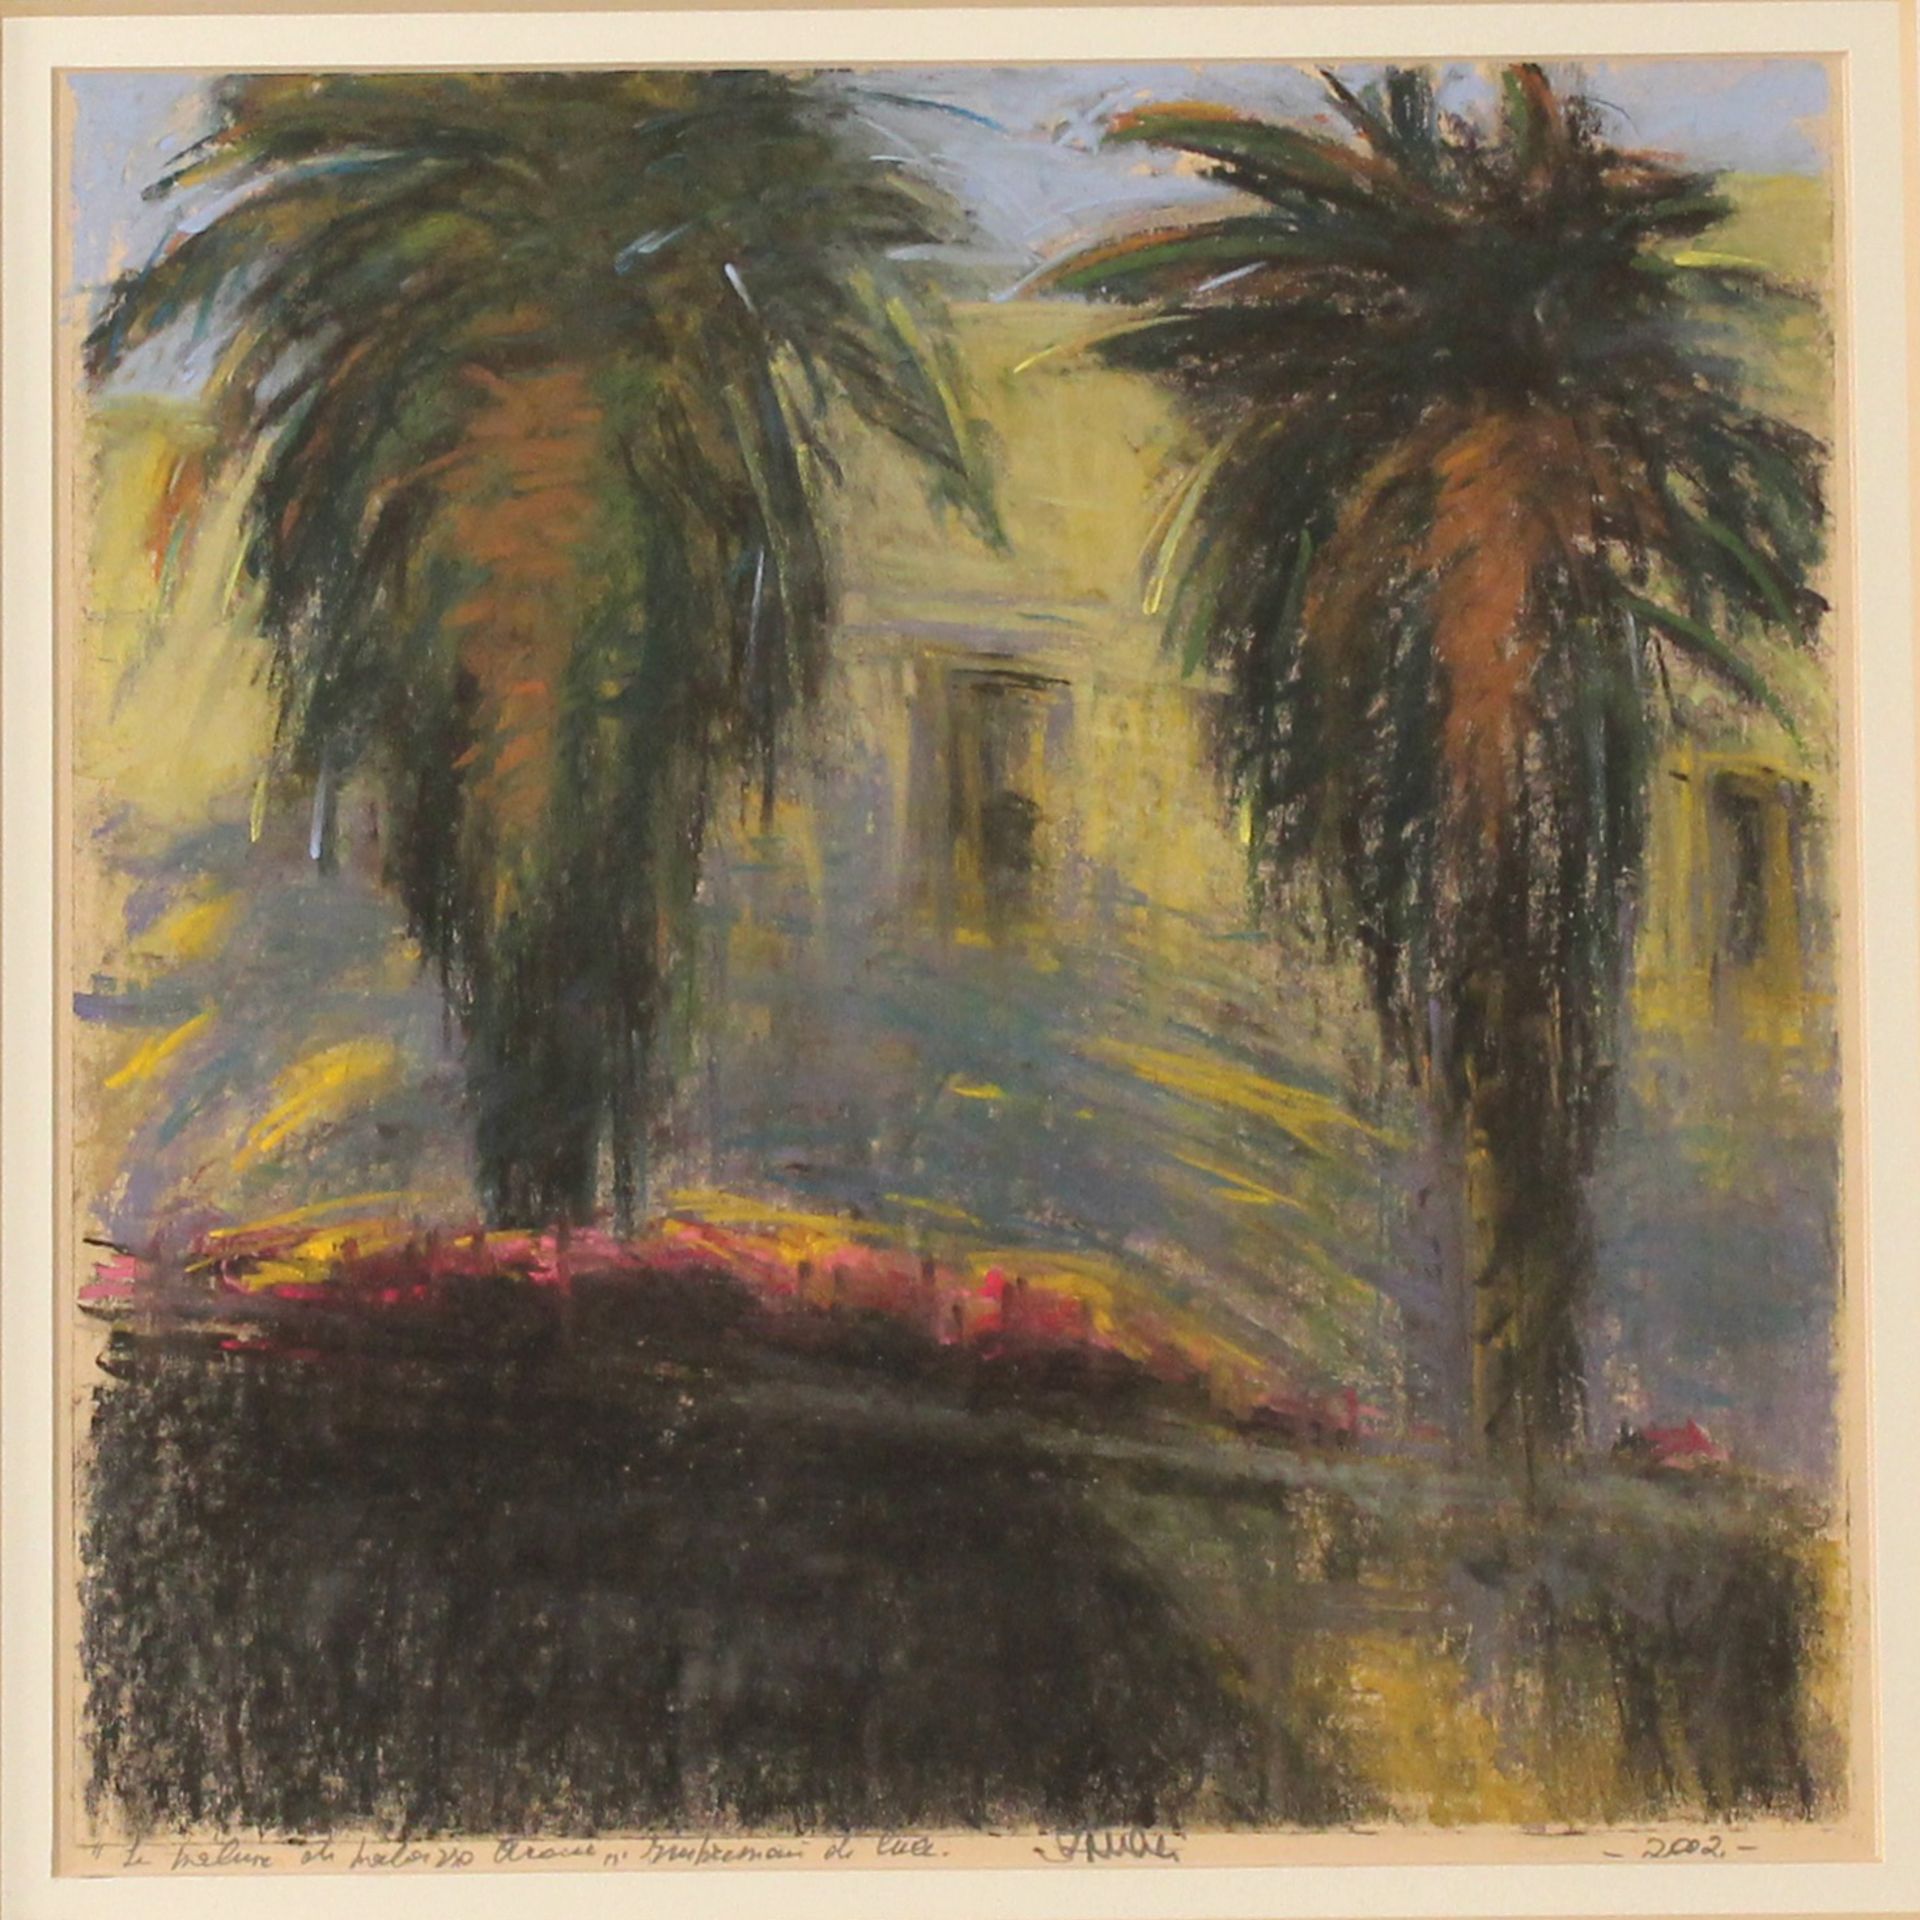 Vincenzo Nucci (1941) "Le palme di piazza Croci" - "The palm trees of Piazza Croci"